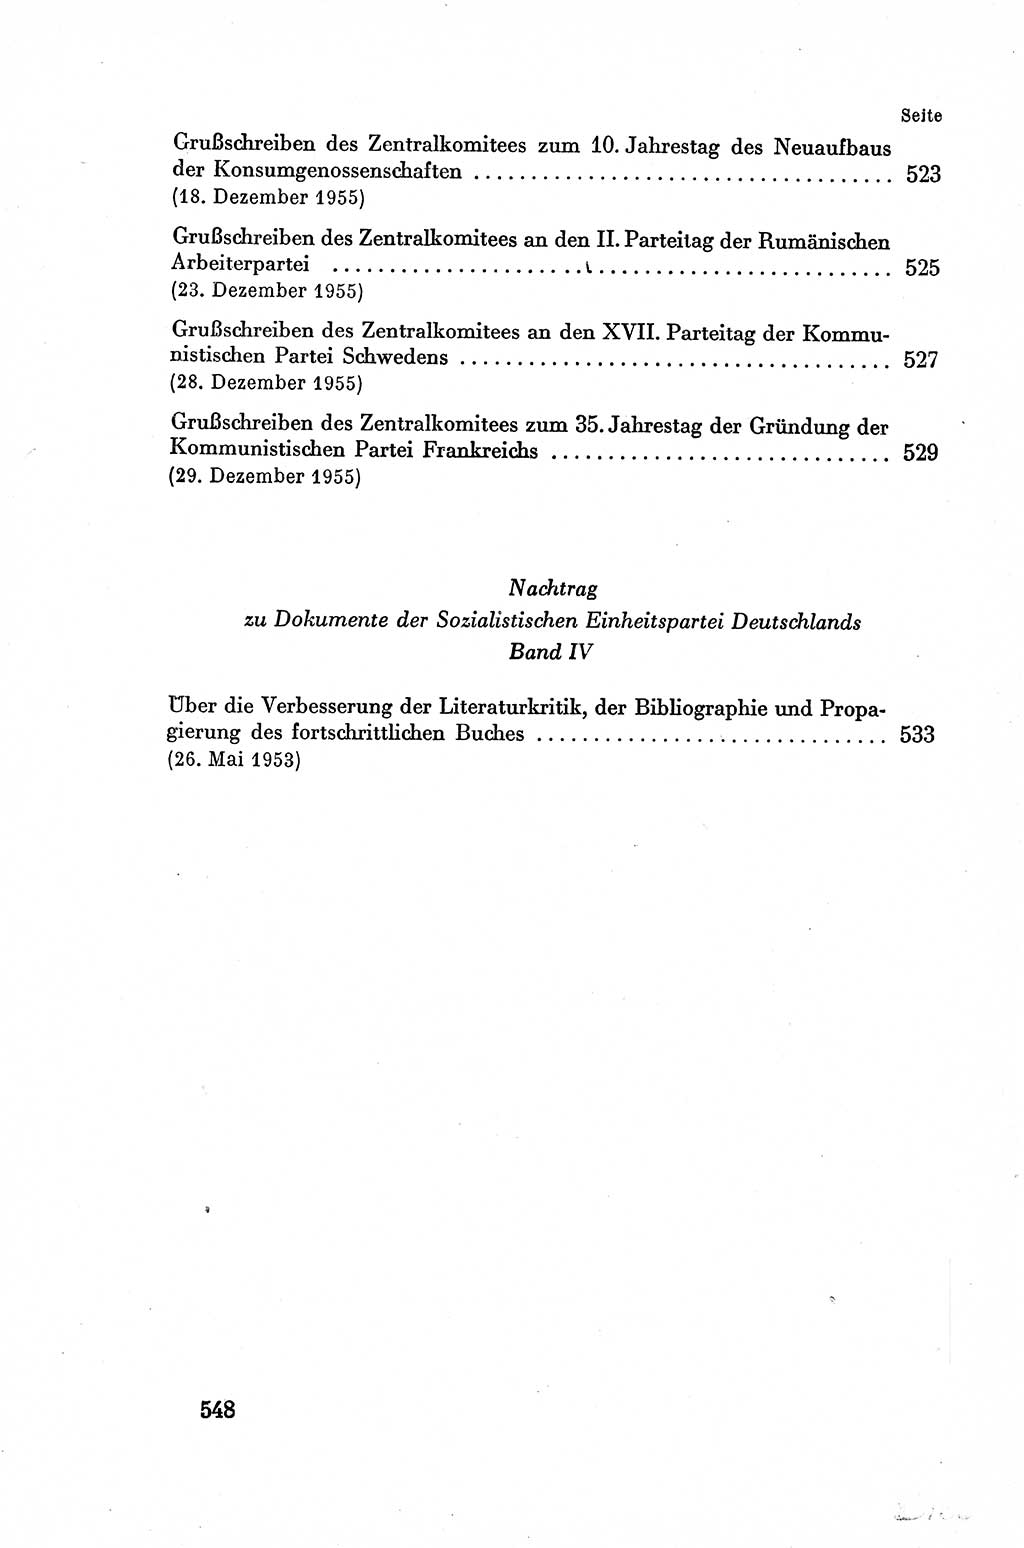 Dokumente der Sozialistischen Einheitspartei Deutschlands (SED) [Deutsche Demokratische Republik (DDR)] 1954-1955, Seite 548 (Dok. SED DDR 1954-1955, S. 548)